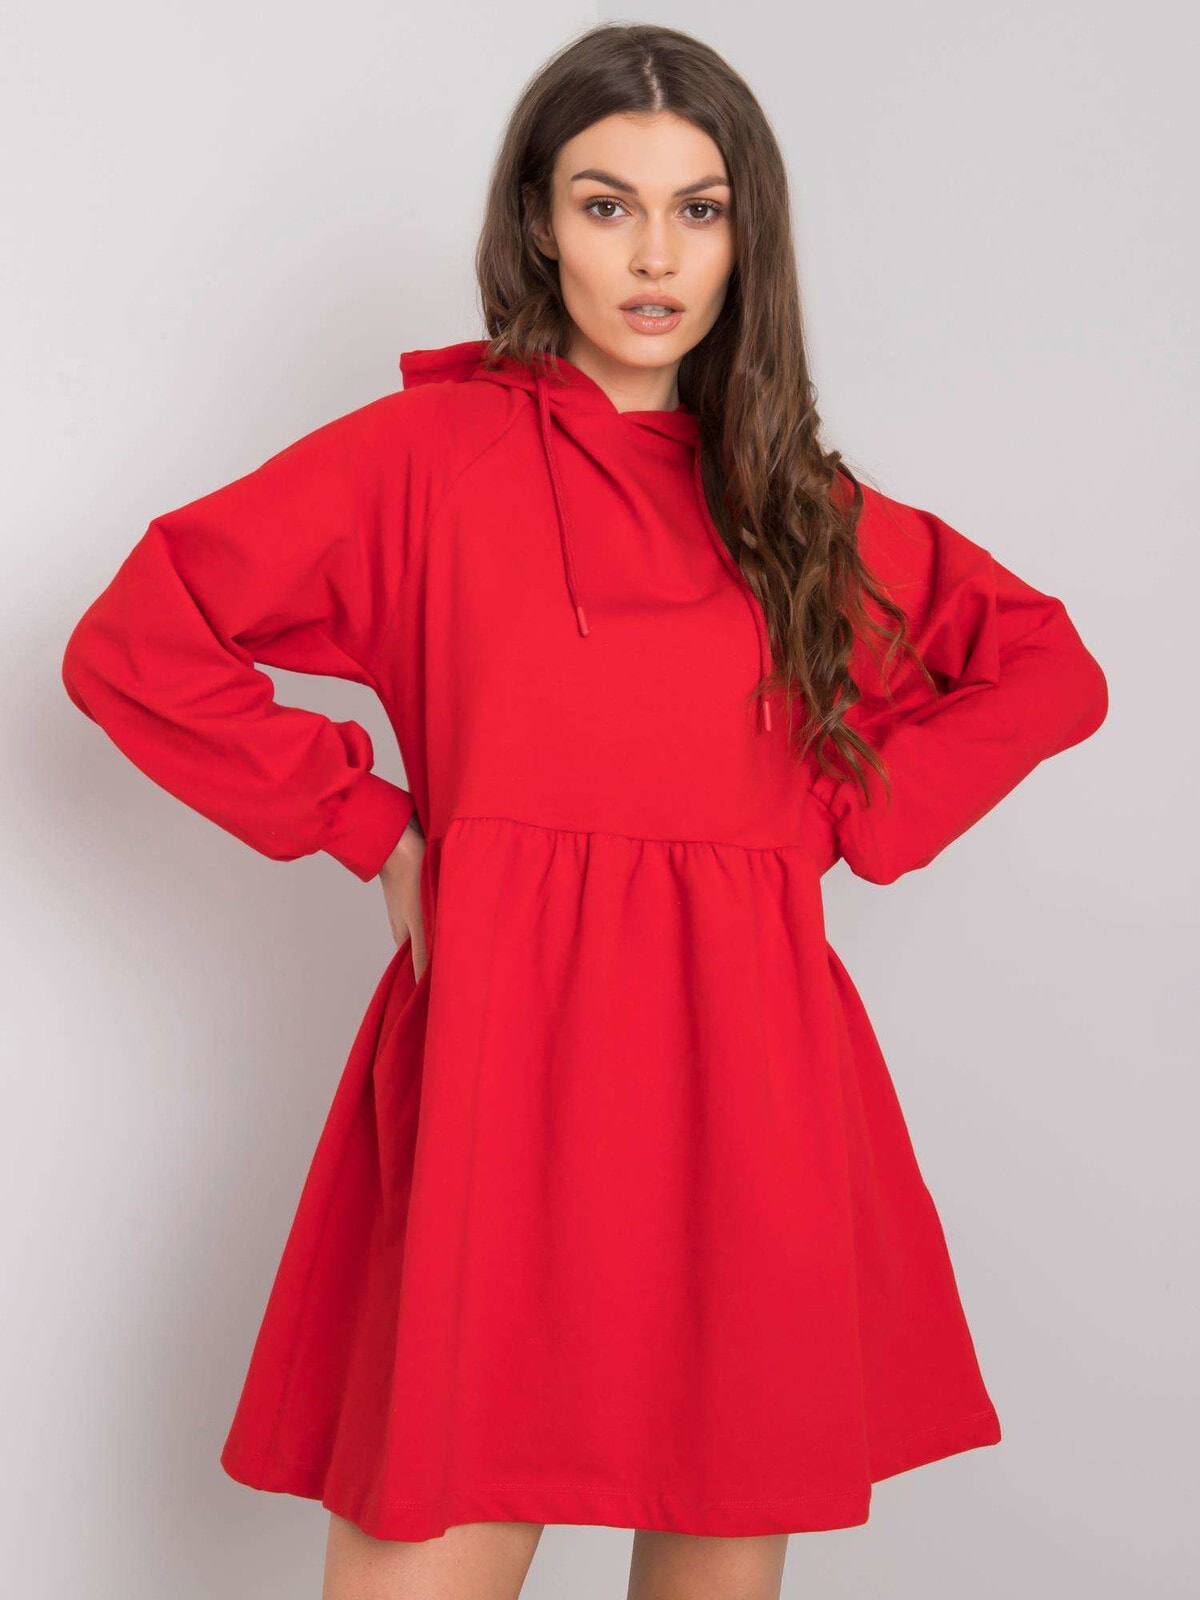 Женское платье ярко красное свободного кроя оверсайз Factory Price